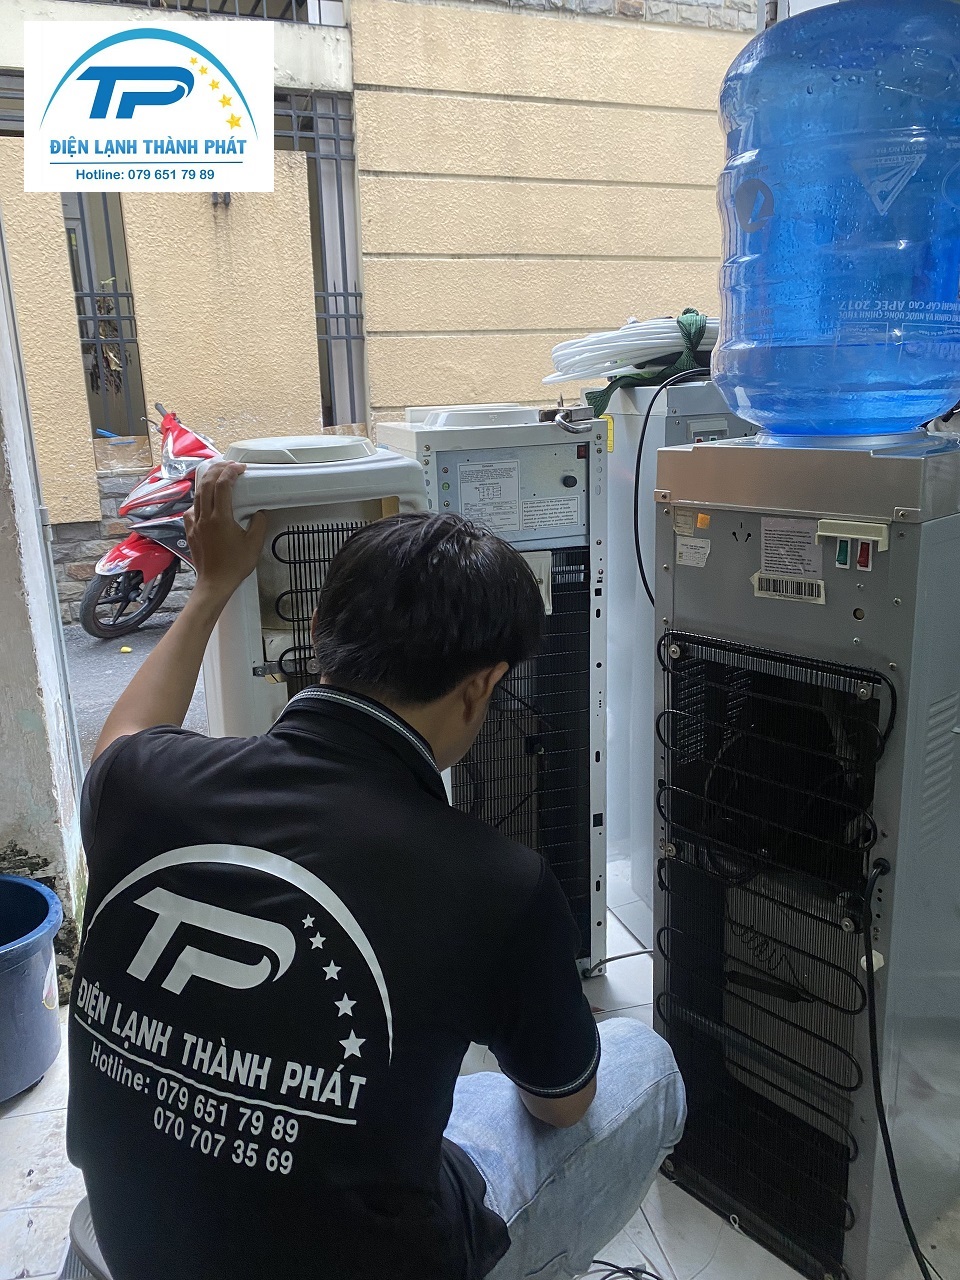 Sửa cây nước nóng lạnh Tân Bình Thành Phát đảm bảo nhanh chóng và chuyên nghiệp.